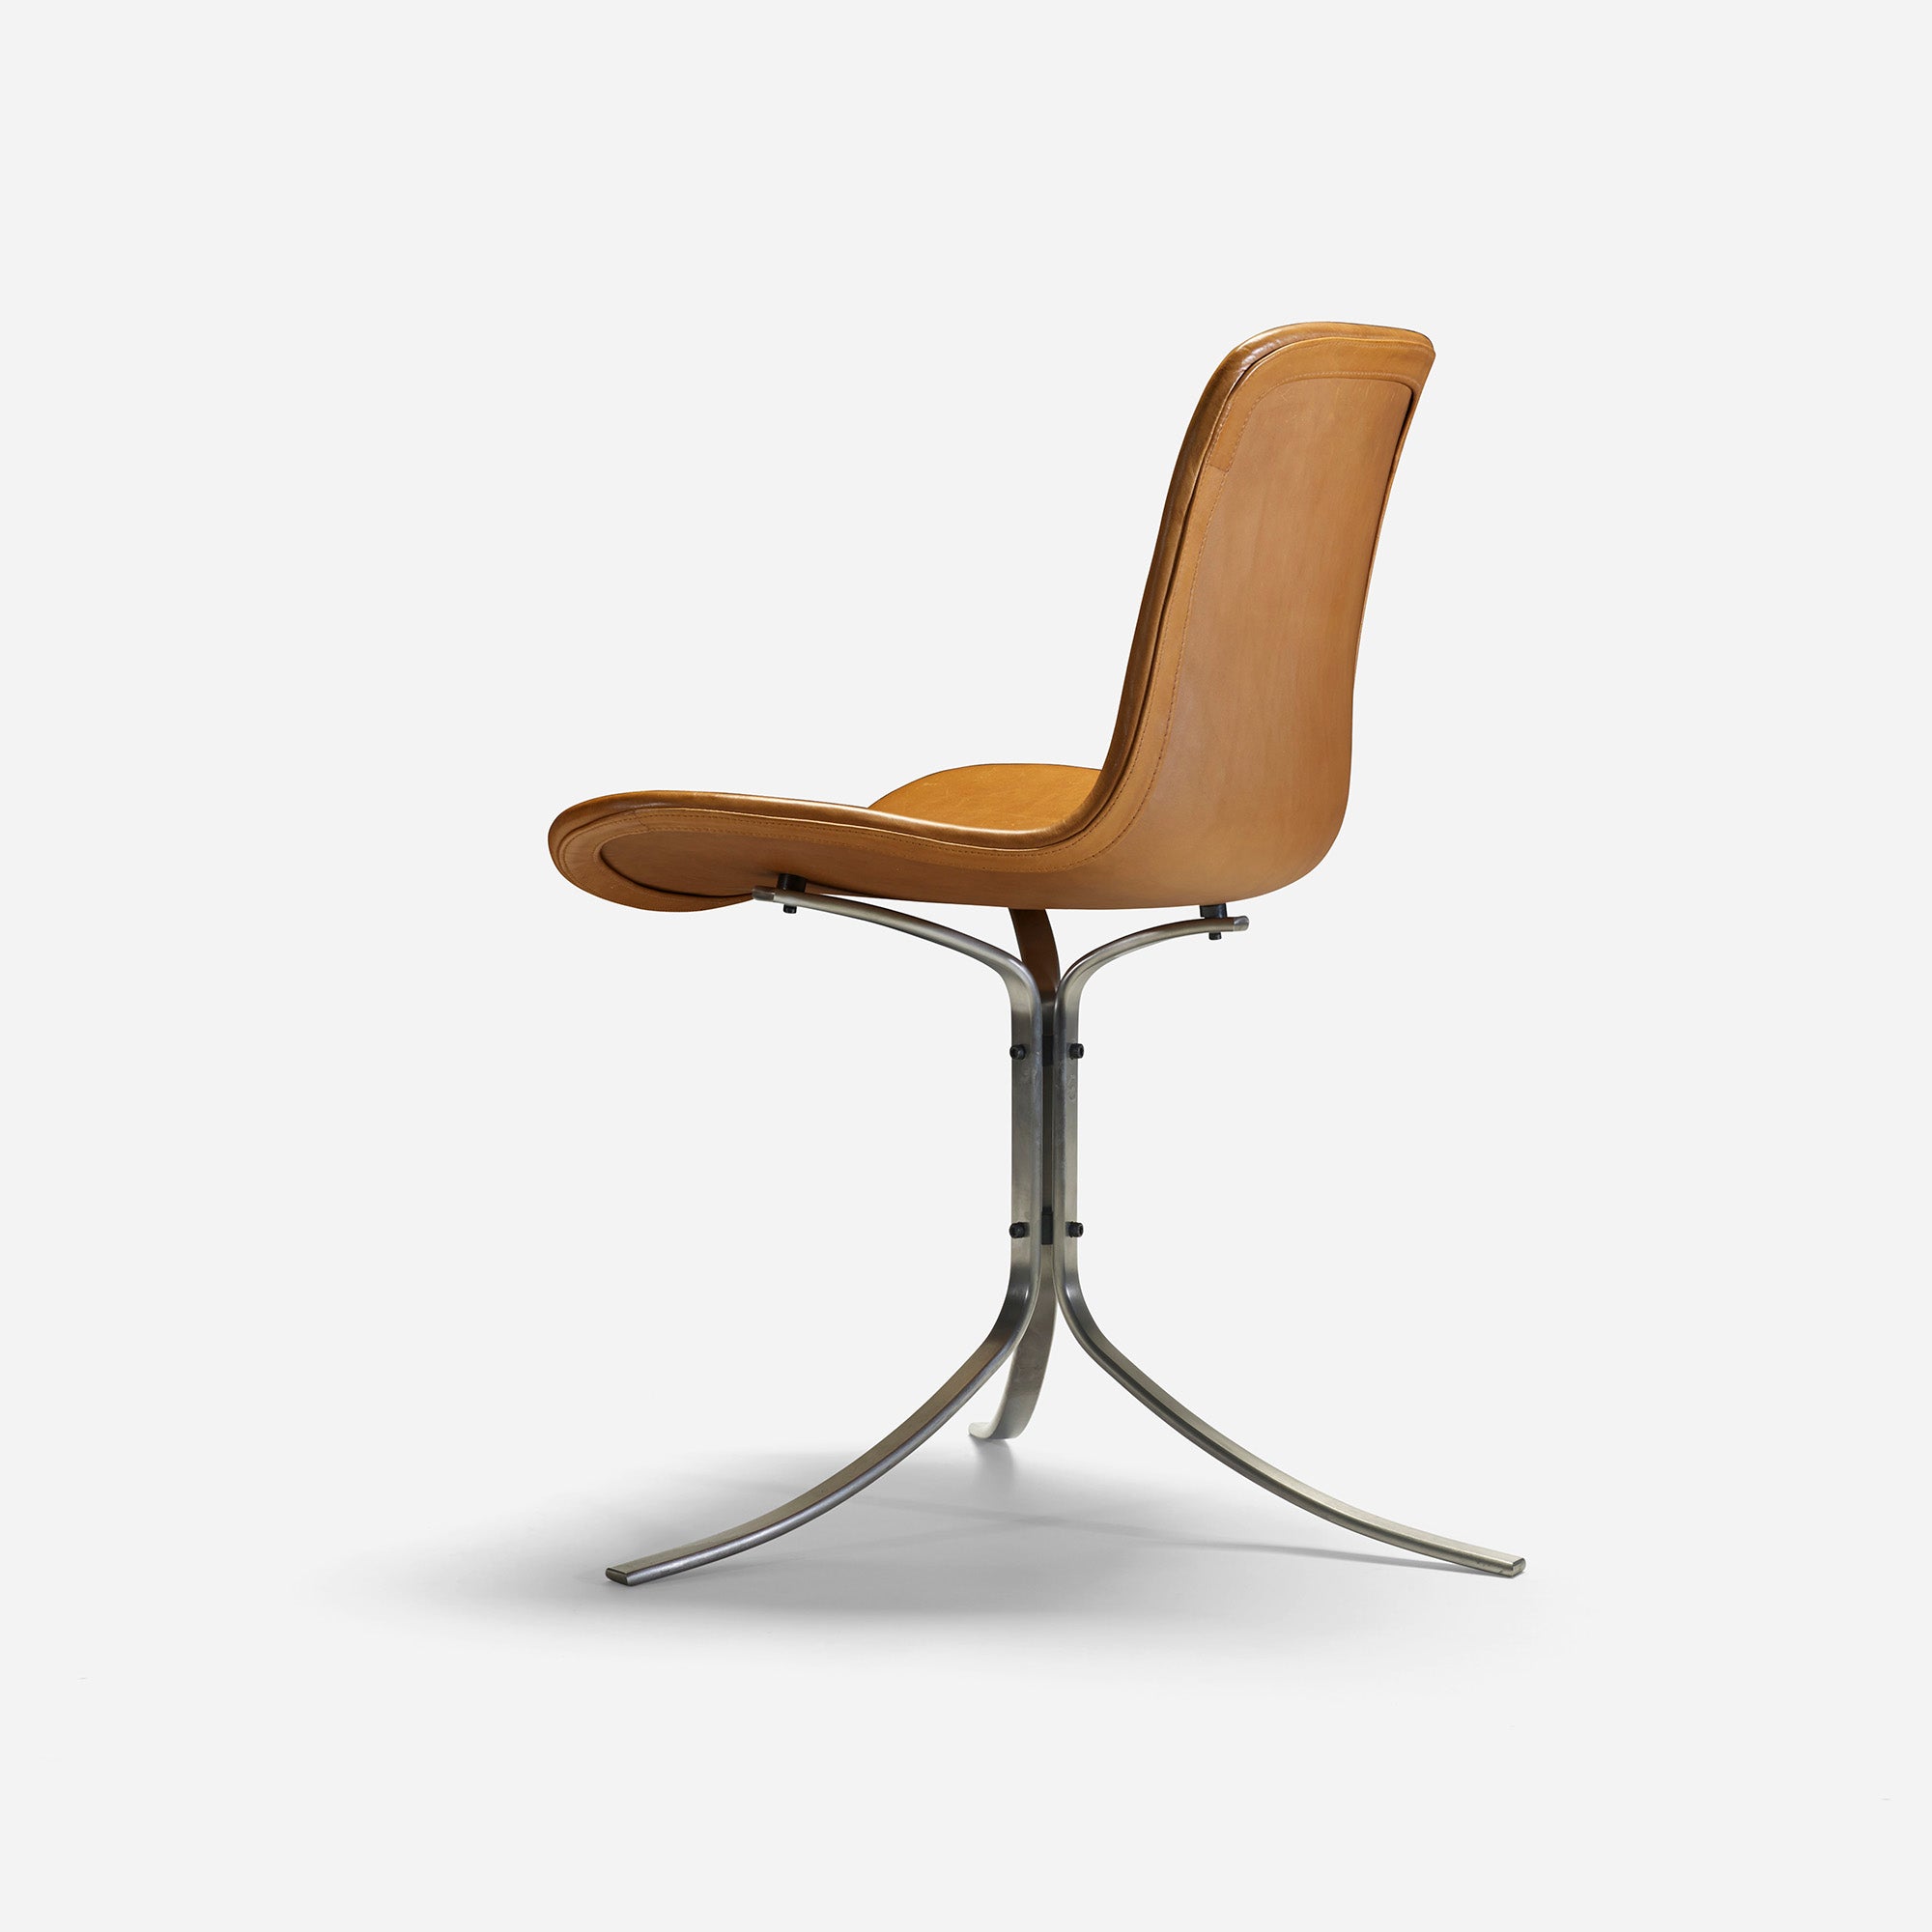 PK 9 chair by Poul Kjaerholm